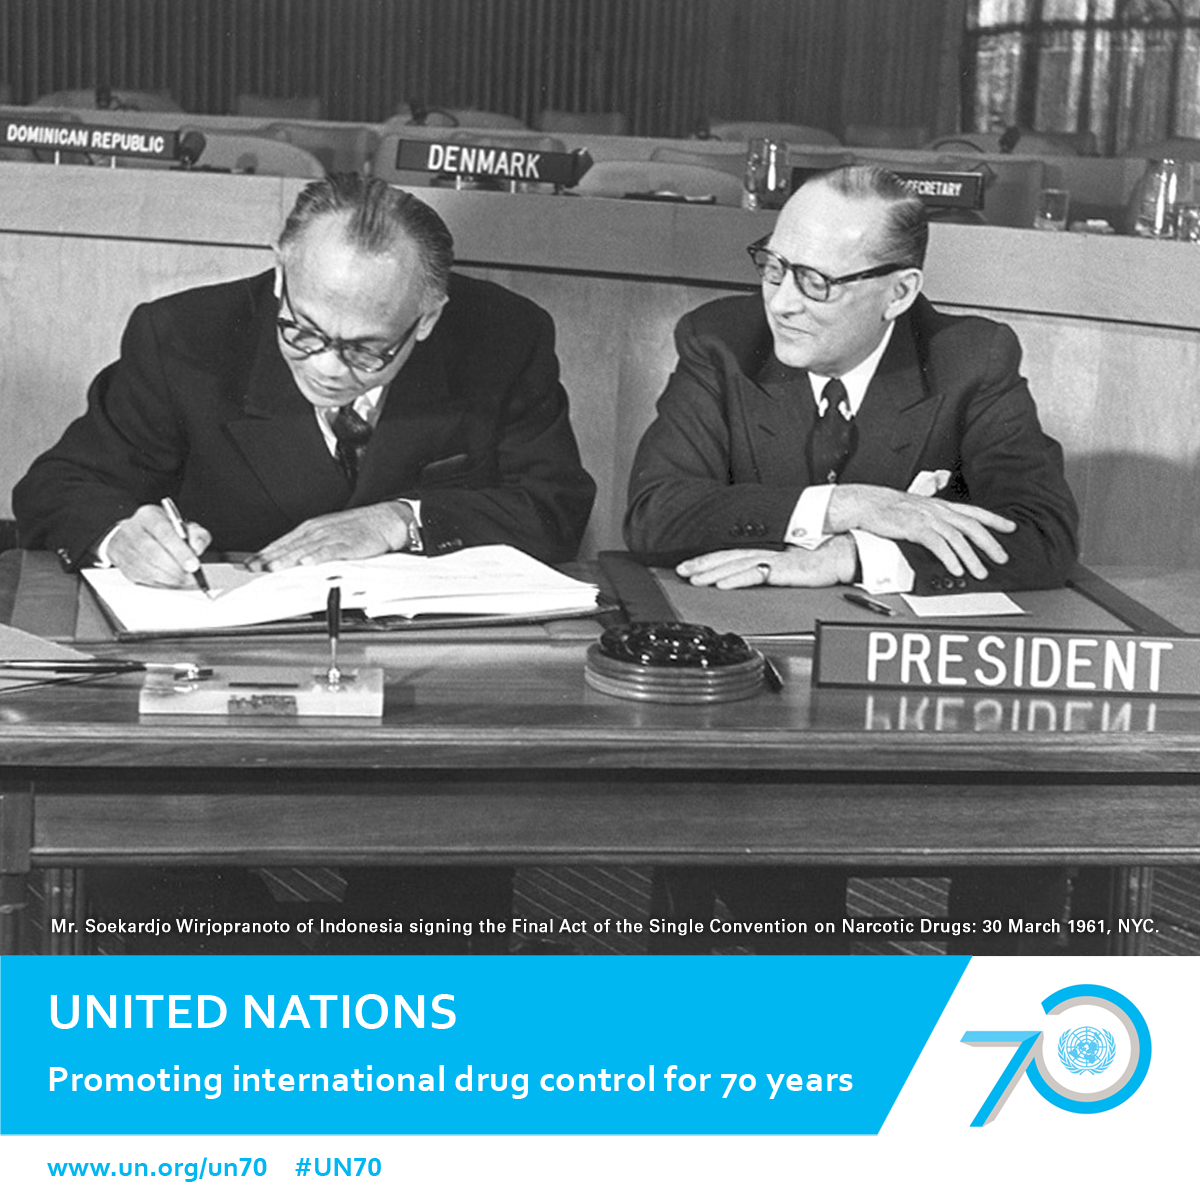 Представитель Индонезии господин Сукарджо Вирьопраното подписывает Заключительный акт Единой конвенции о наркотических средствах, 30 марта 1961 года, Нью-Йорк